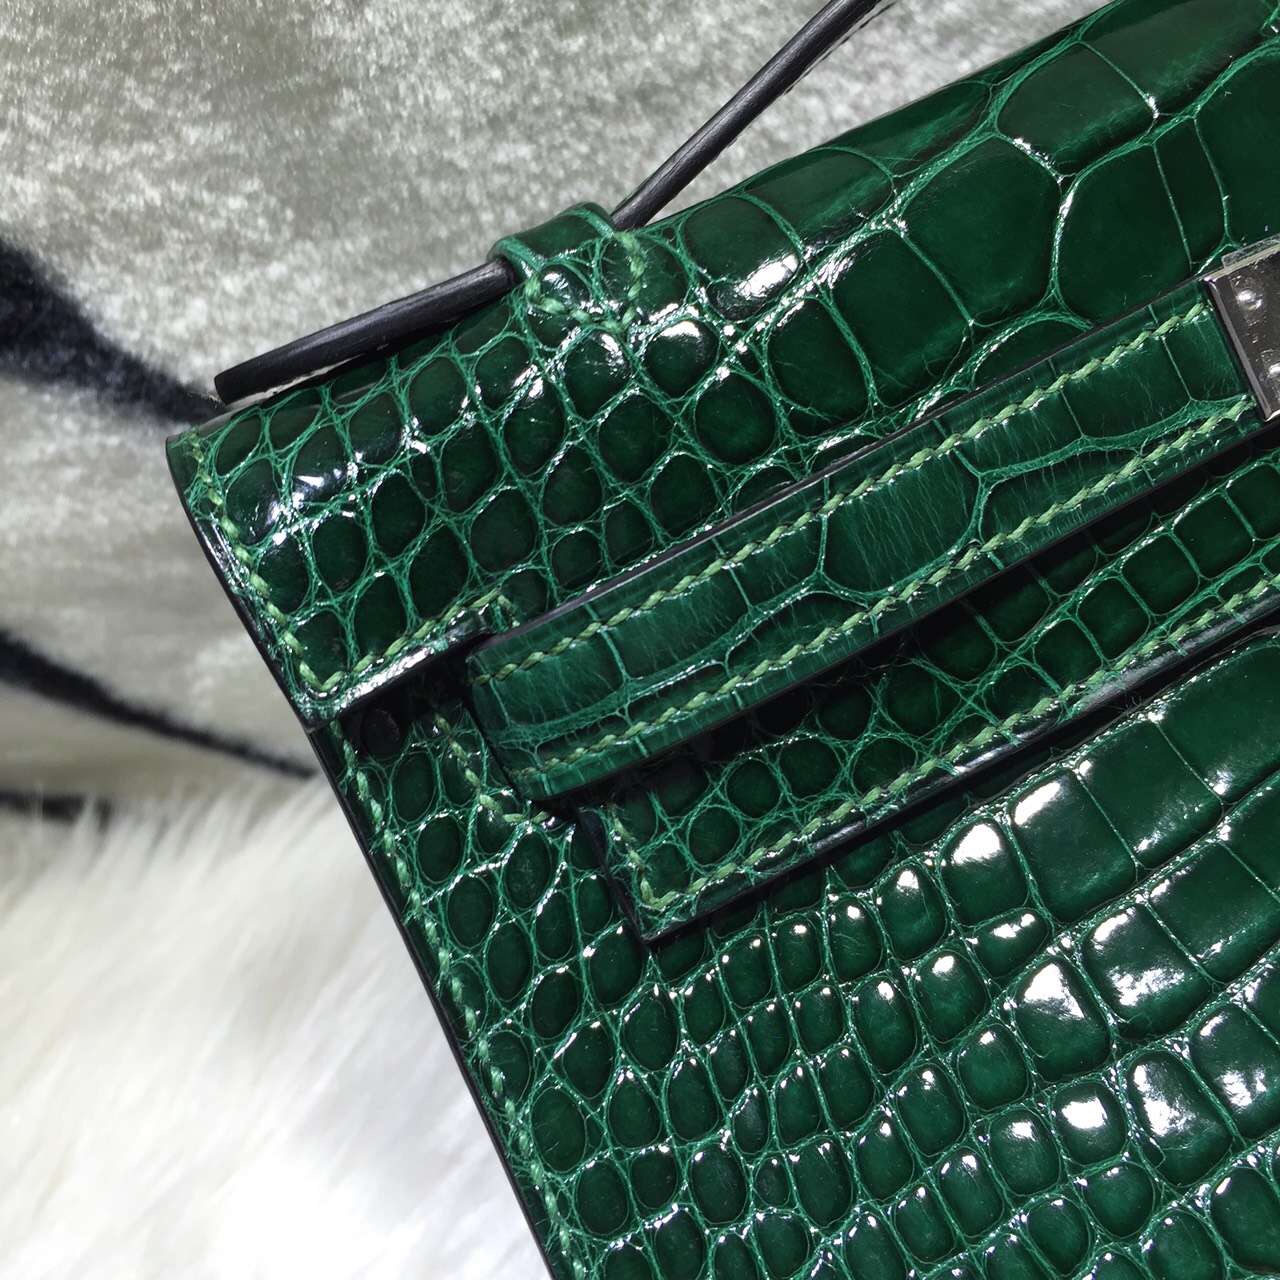 Hand Stitching Hermes Mini Kelly Bag CK67 Emerald Green Crocodile Skin